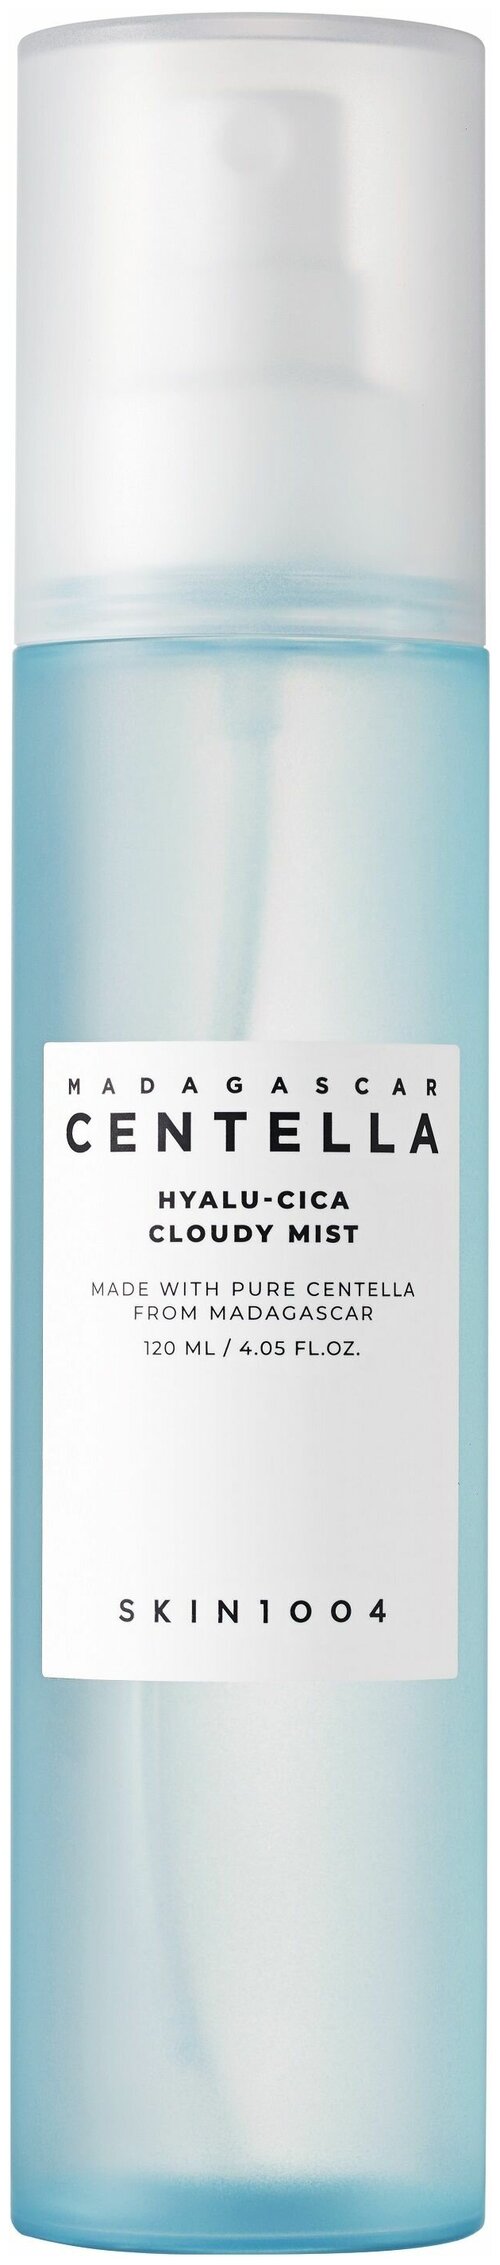 Увлажняющий мист для лица Skin 1004 Madagascar Centella Hyalu-Cica Cloudy Mist 120 мл